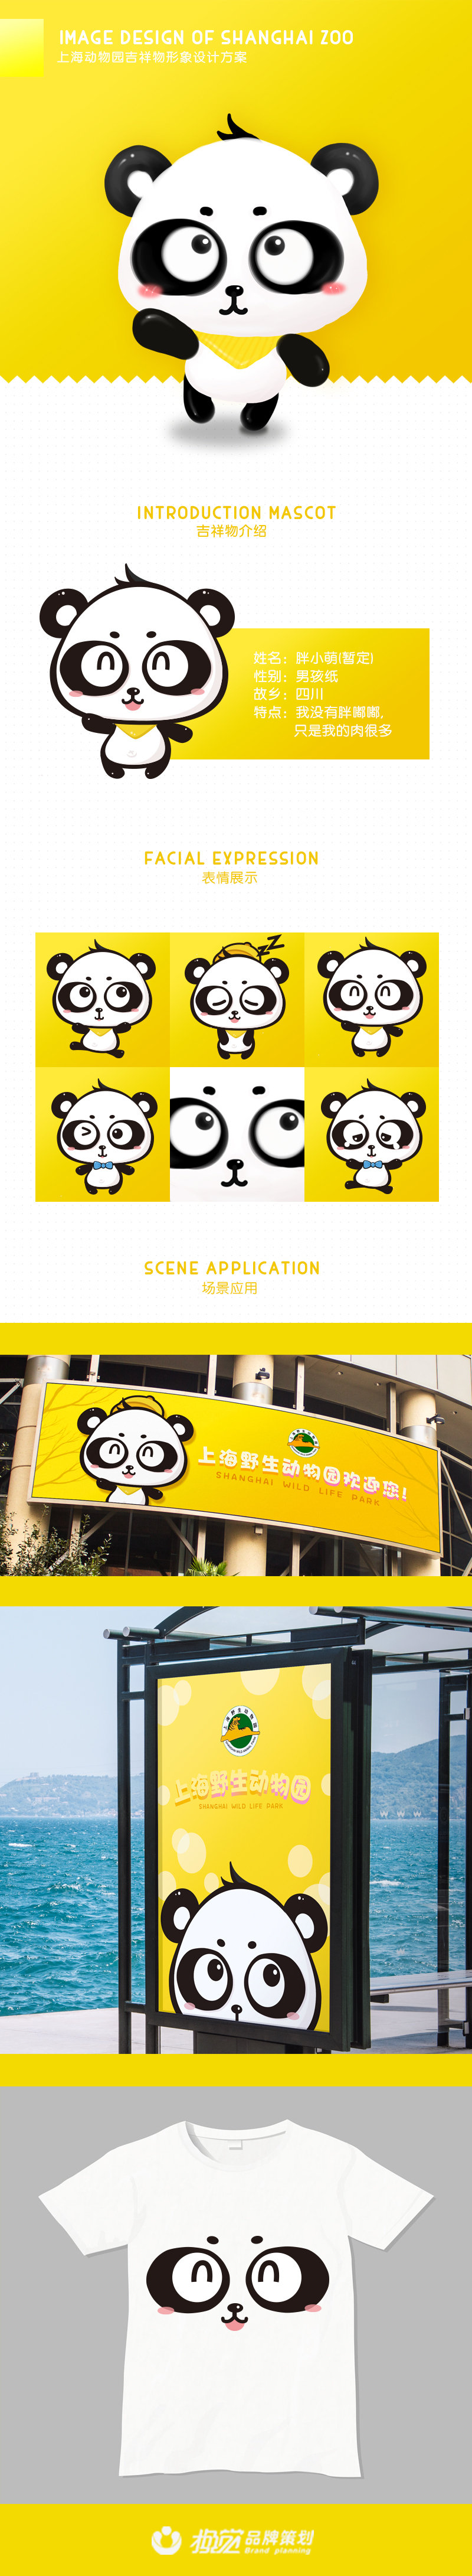 上海野生動物園吉祥物設計圖0